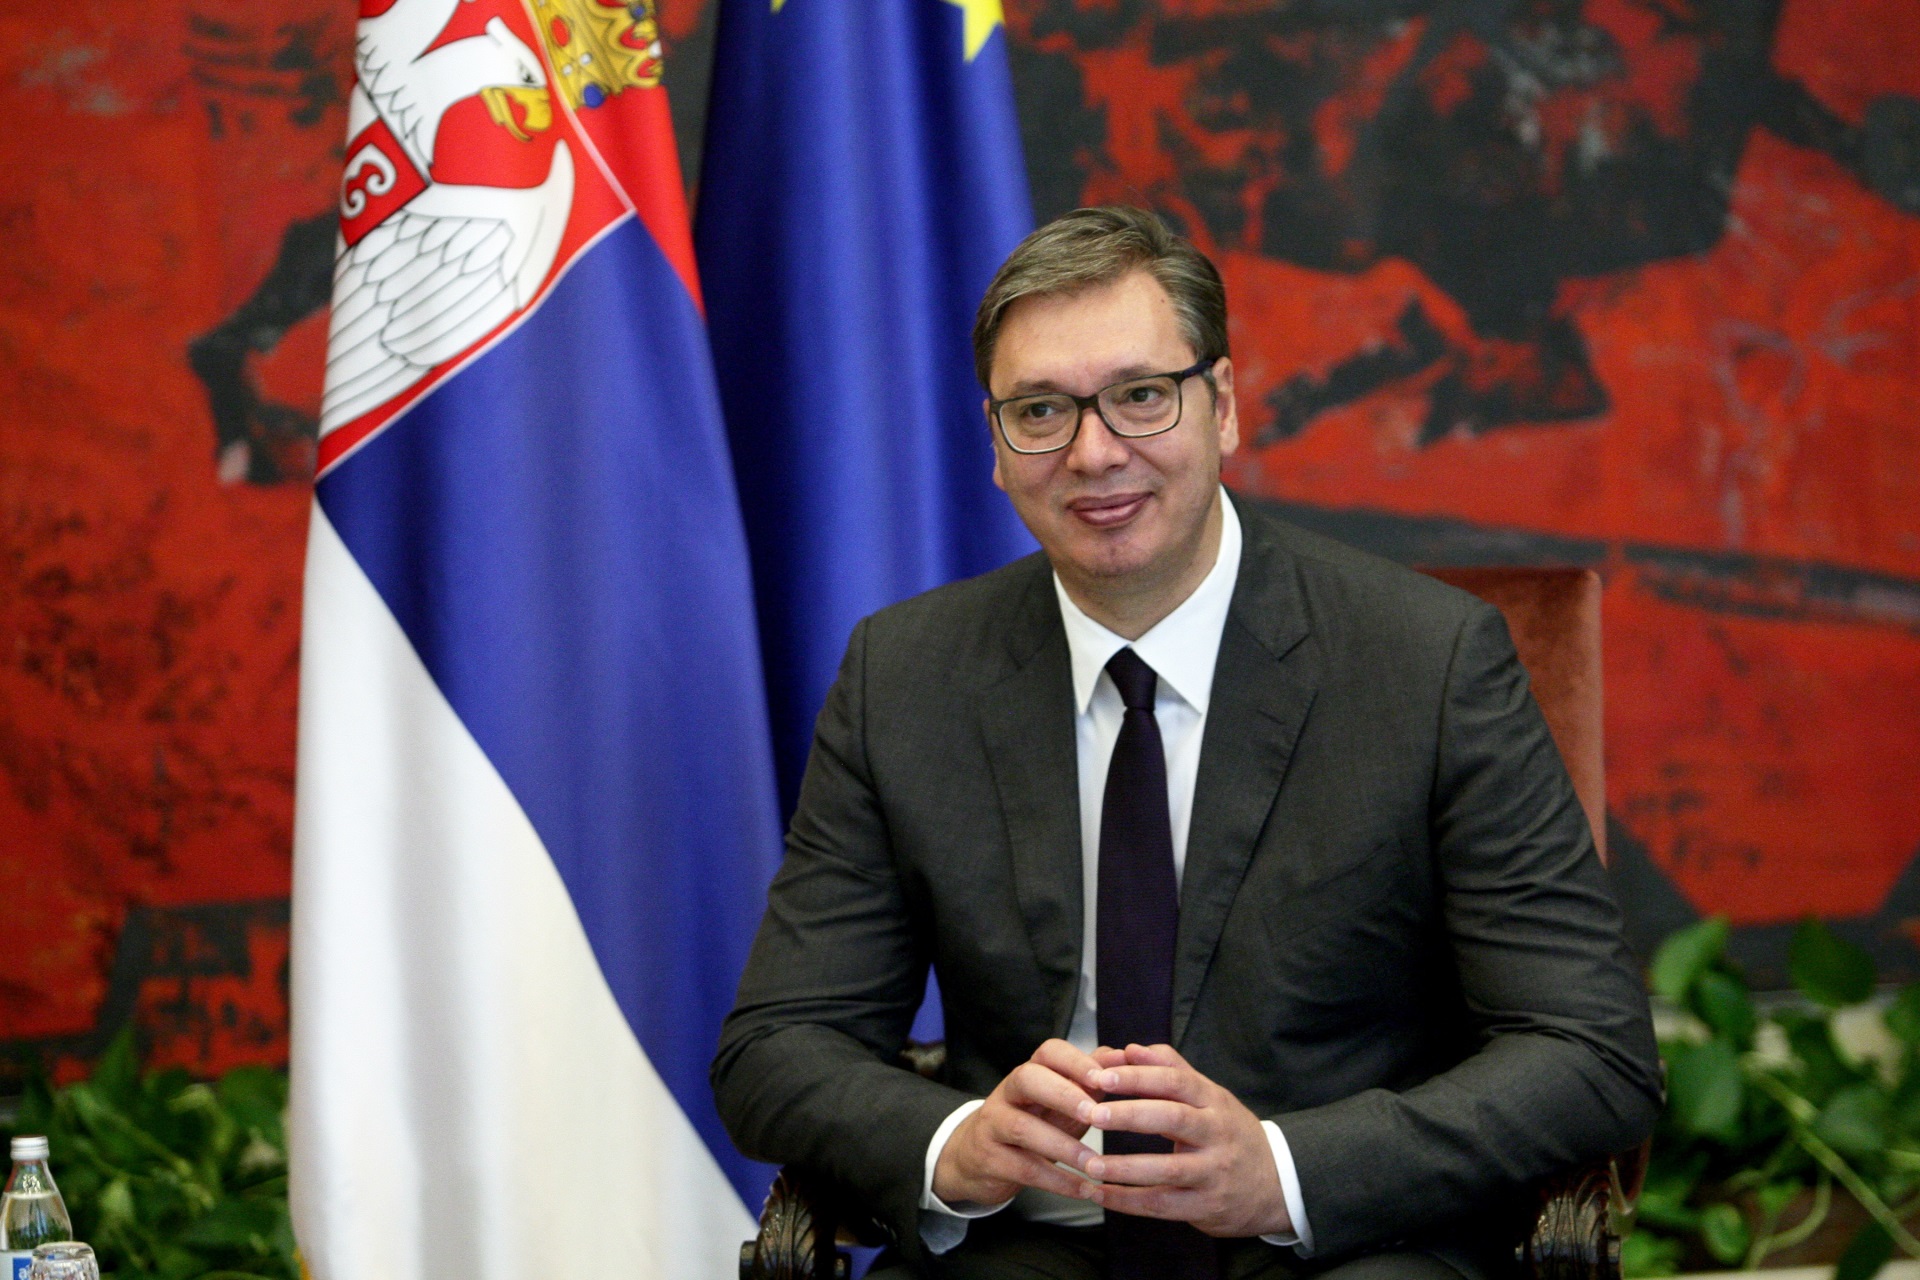 Predsednik Srbije Aleksandar Vucic sastao se danas sa clanom Politbiroa Centralnog komiteta KP Kine i direktorom Kancelarije Centralne komisije za spoljne poslove Jangom Djijecijem